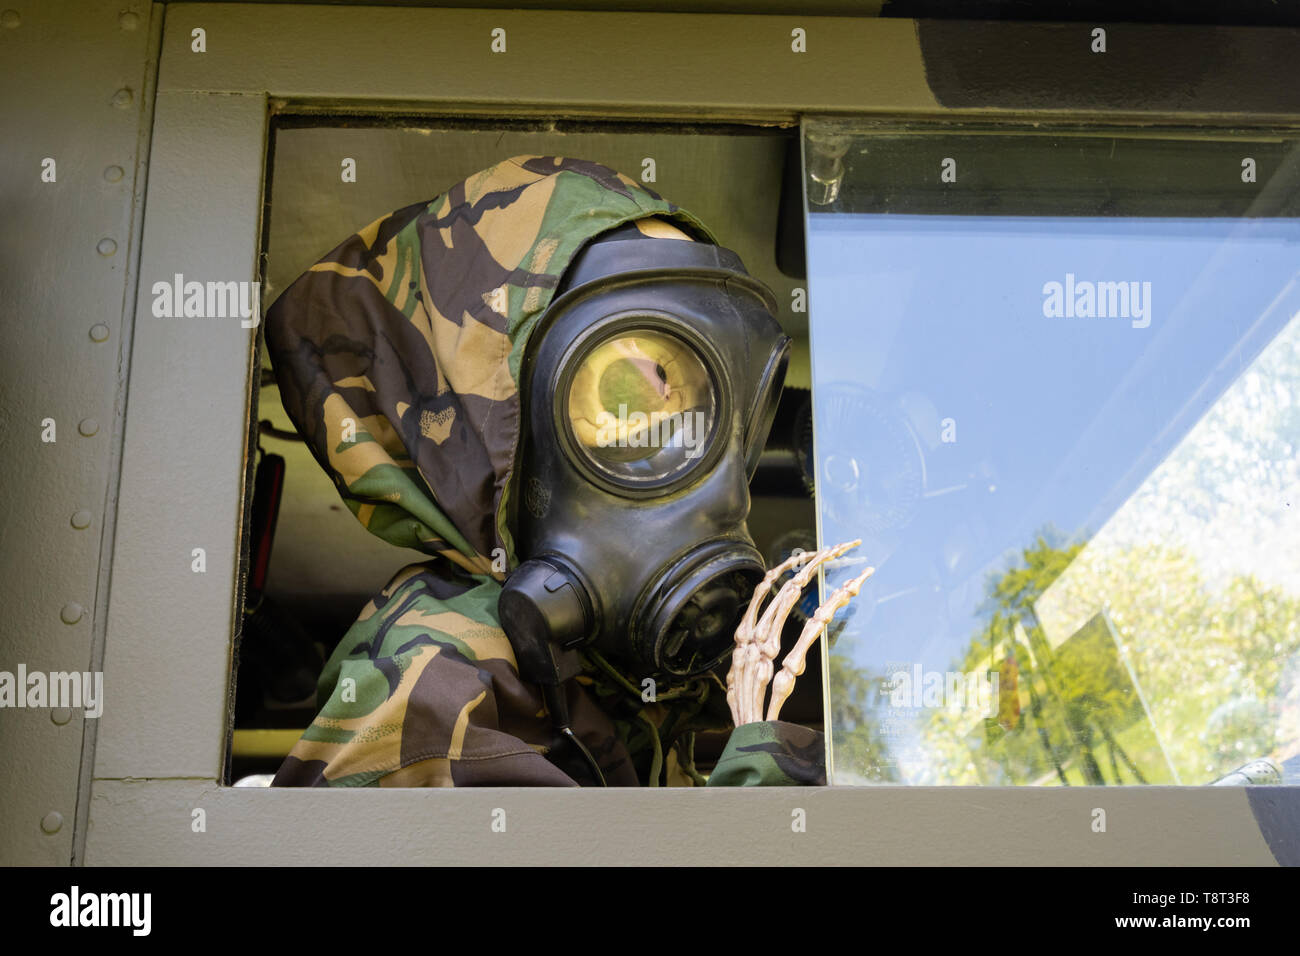 Esqueleto vestido como un soldado que llevaba una máscara de gas en un vehículo militar en un car show, REINO UNIDO Foto de stock